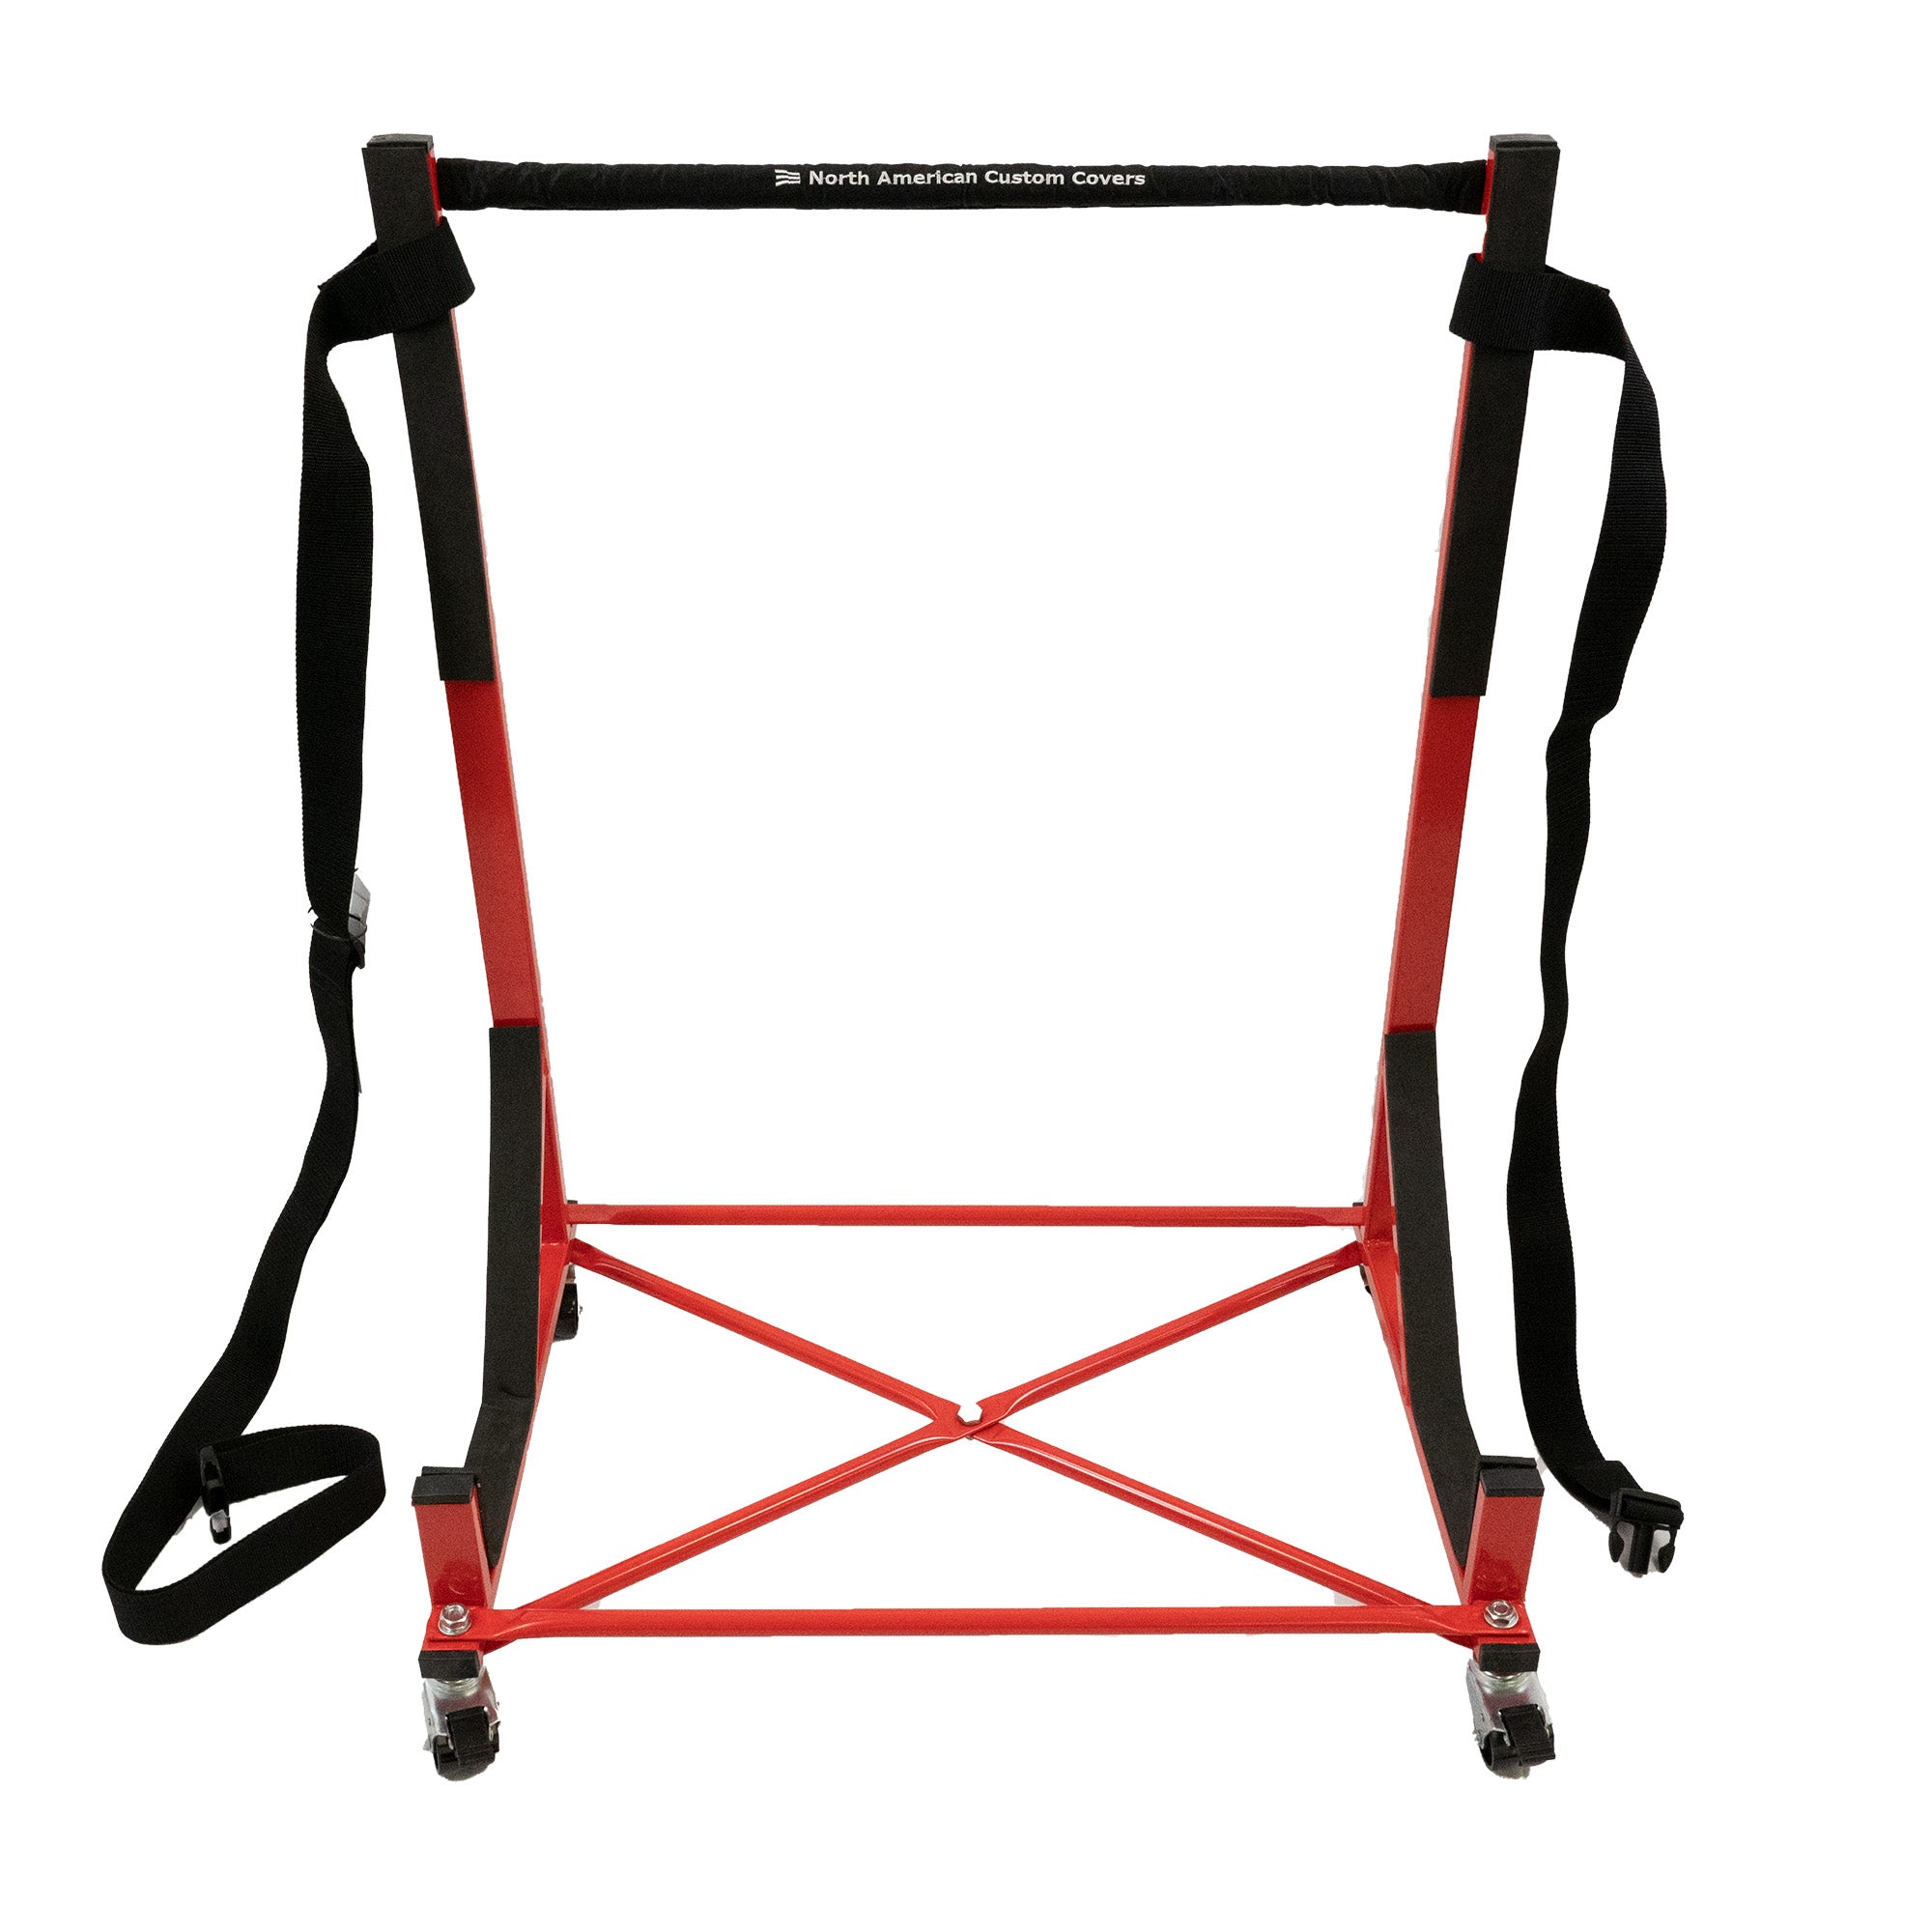 Support de chariot à support rigide robuste (rouge) avec harnais de sécurité, couvercle de barre supérieure et couvercle anti-poussière rigide de taille normale (050R)